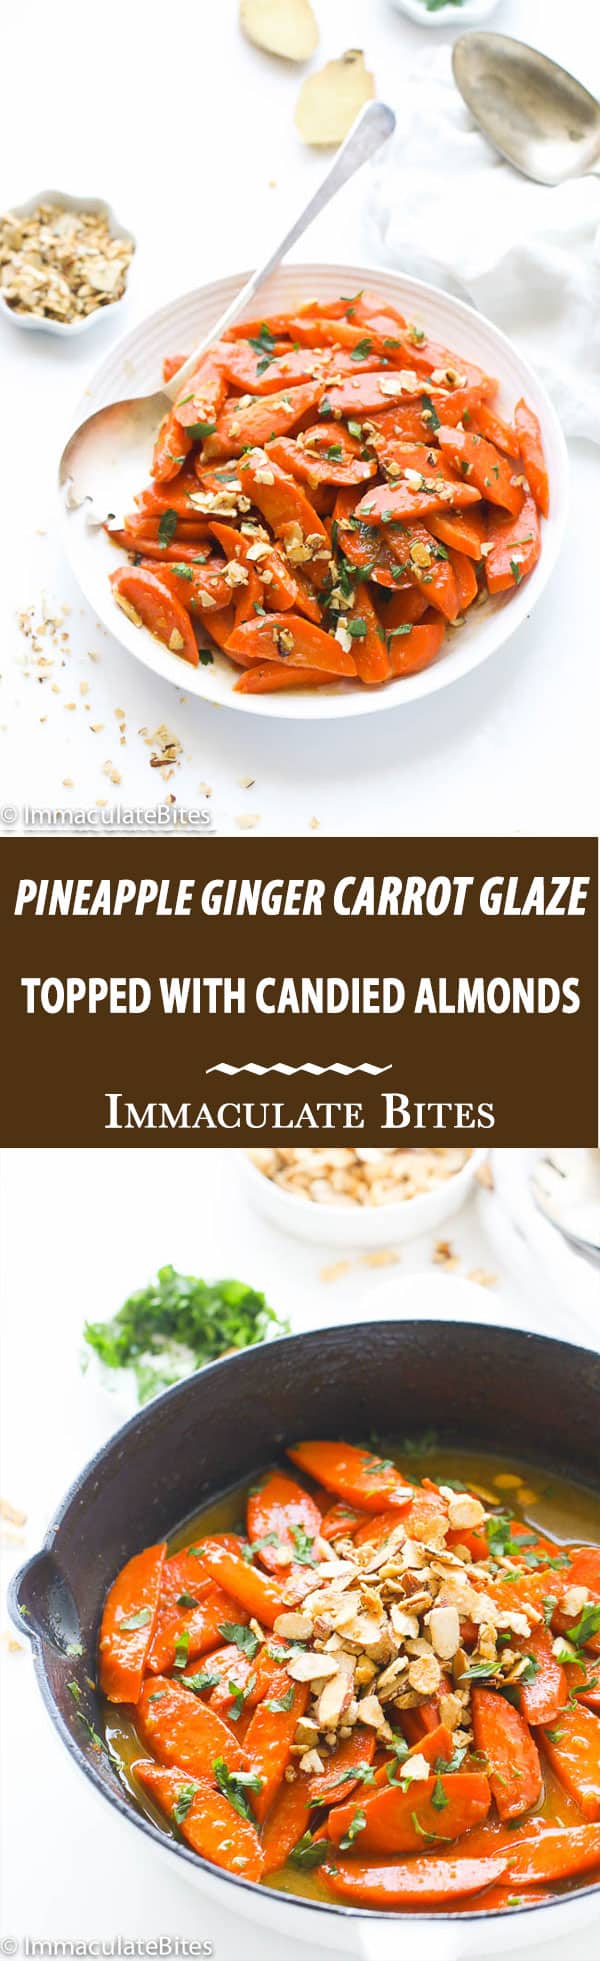 Pineapple Ginger Carrot Glaze